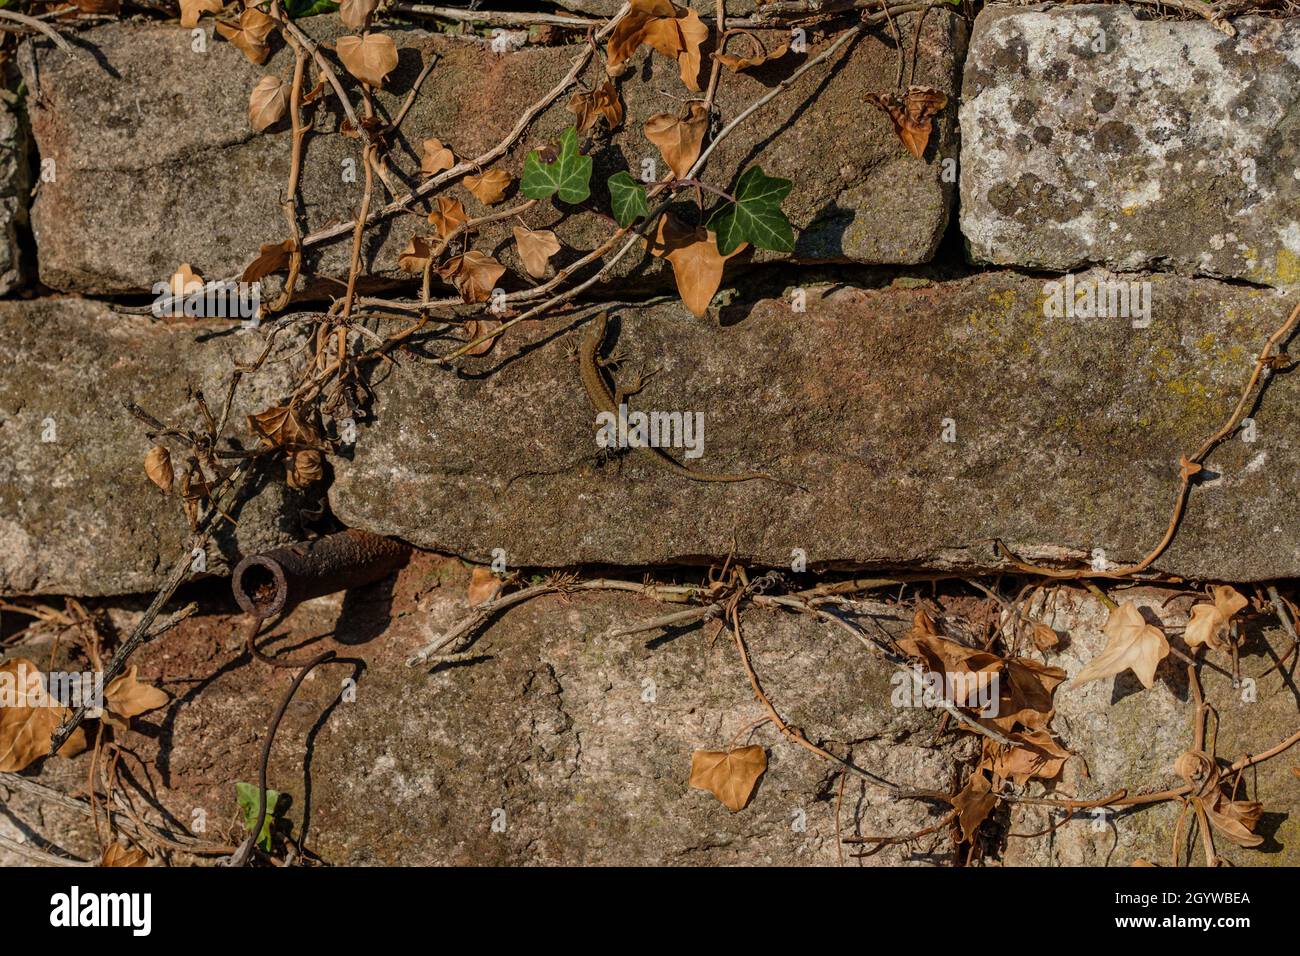 Europäische Mauereidechse auf einem Sandstein Stockfoto